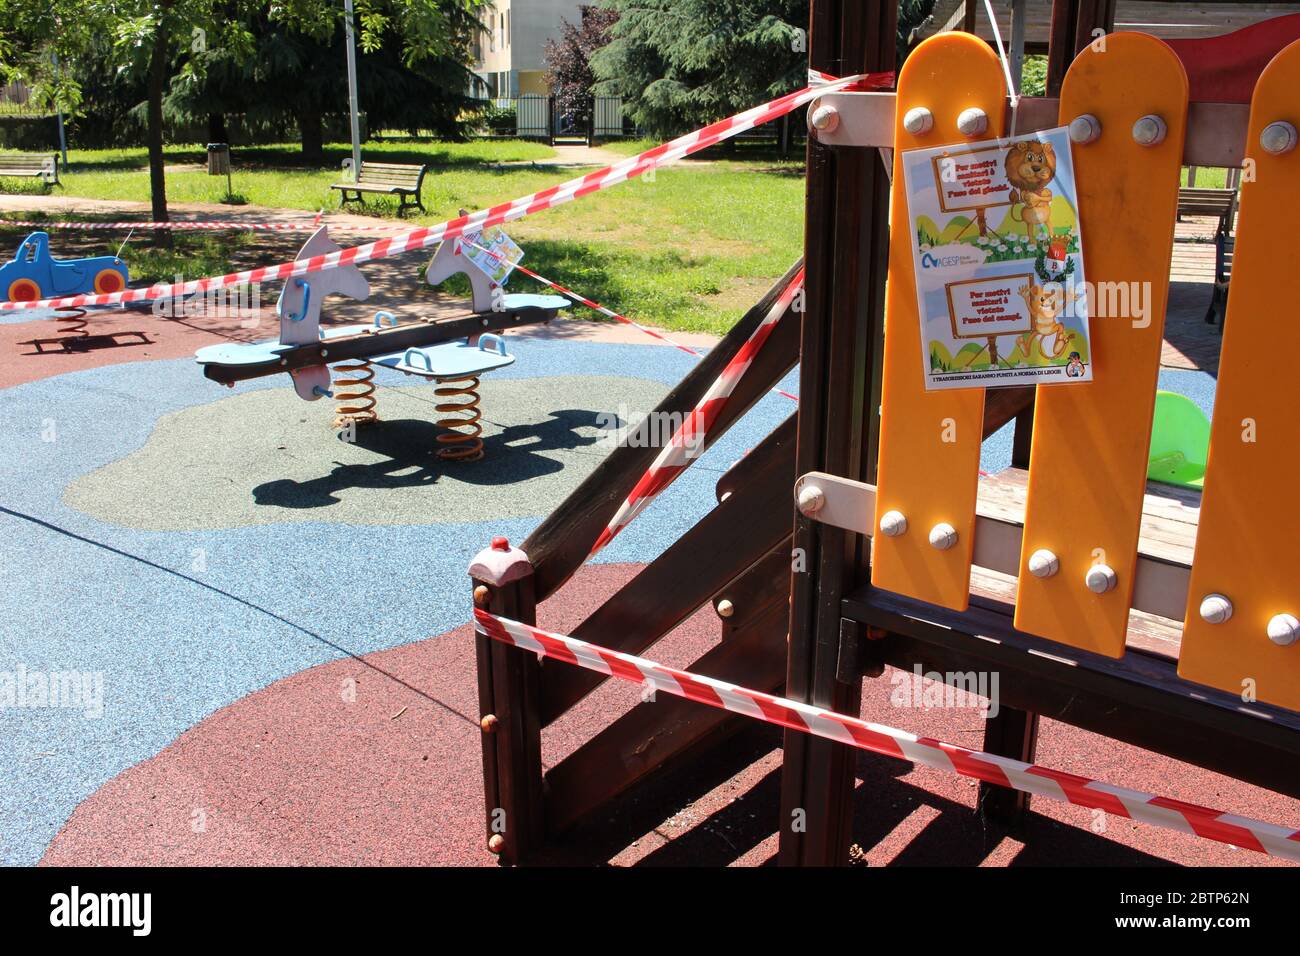 Busto Arsizio, Varese / Italie - 05 27 2020: L'aire de jeux pour enfants en Italie, fermée en raison du virus Covid-19. Isolé avec ruban blanc et rouge. Banque D'Images